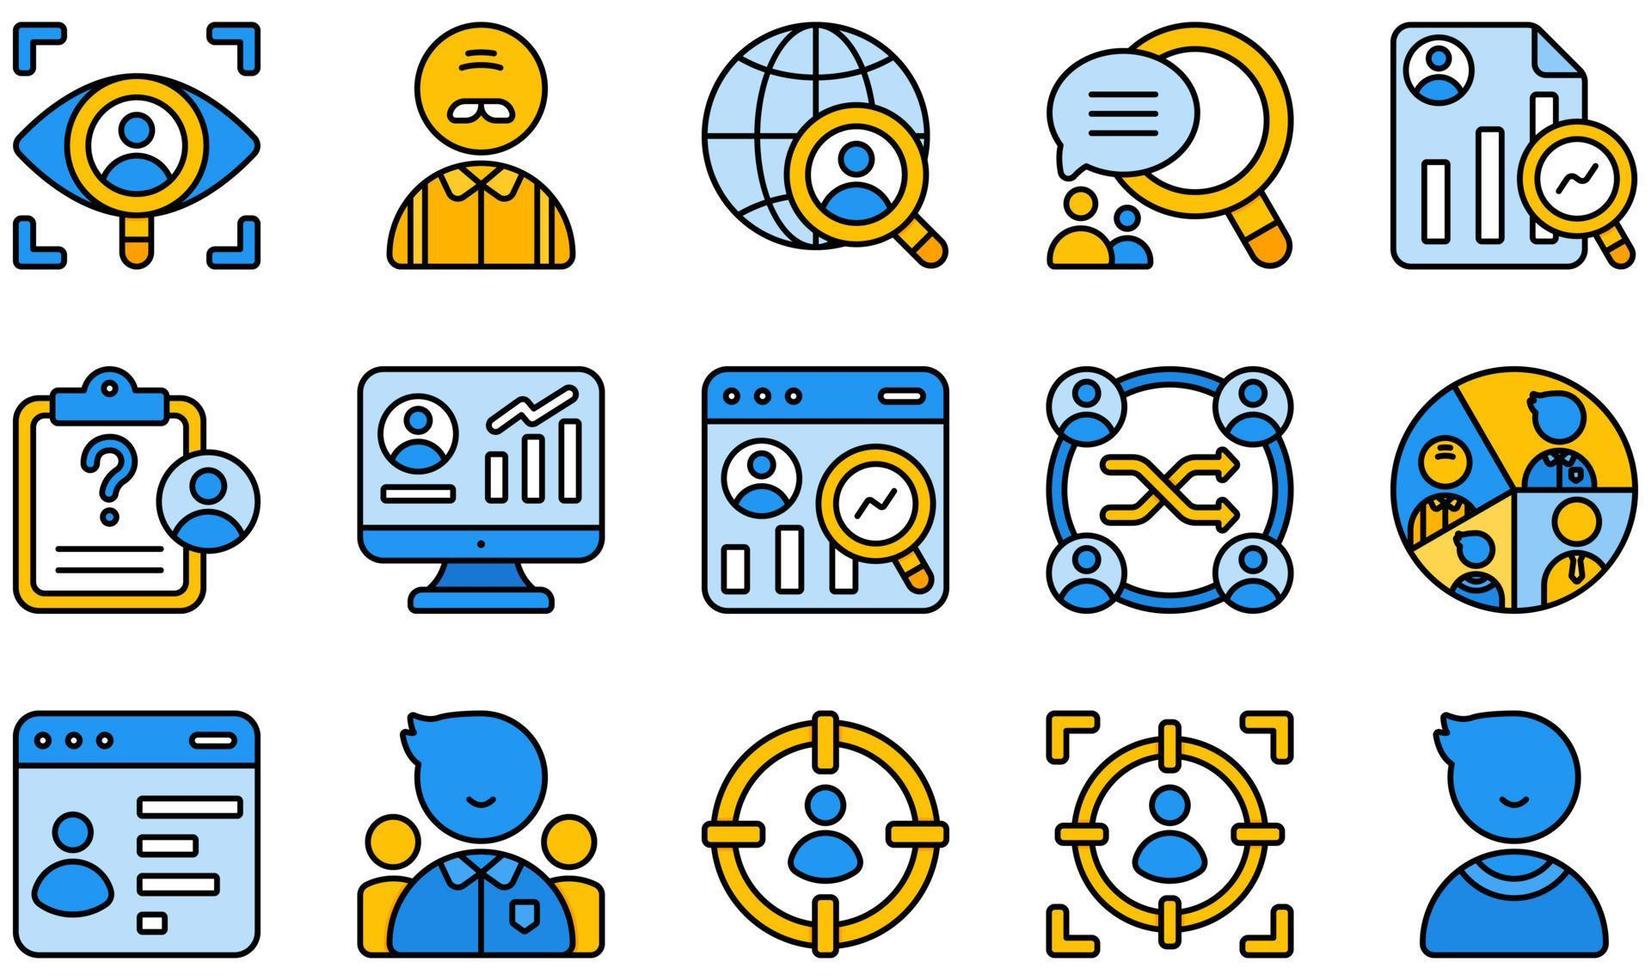 conjunto de iconos vectoriales relacionados con la investigación de mercado. contiene íconos como observación, encuesta en línea, cualitativa, cuantitativa, investigación, segmentación y más. vector